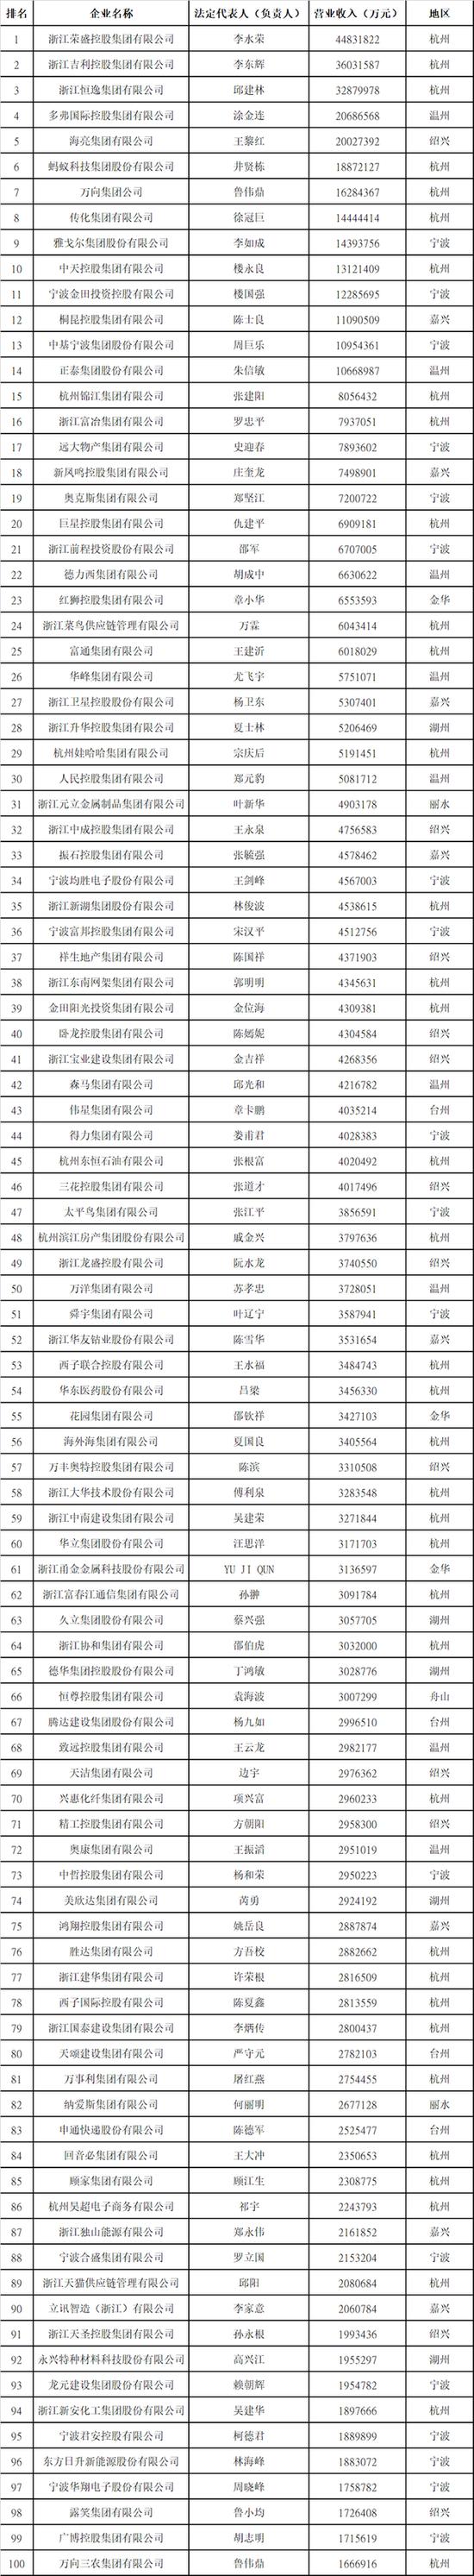 浙江发布“2022年民营企业100强”榜单 荣盛吉利恒逸排名前三